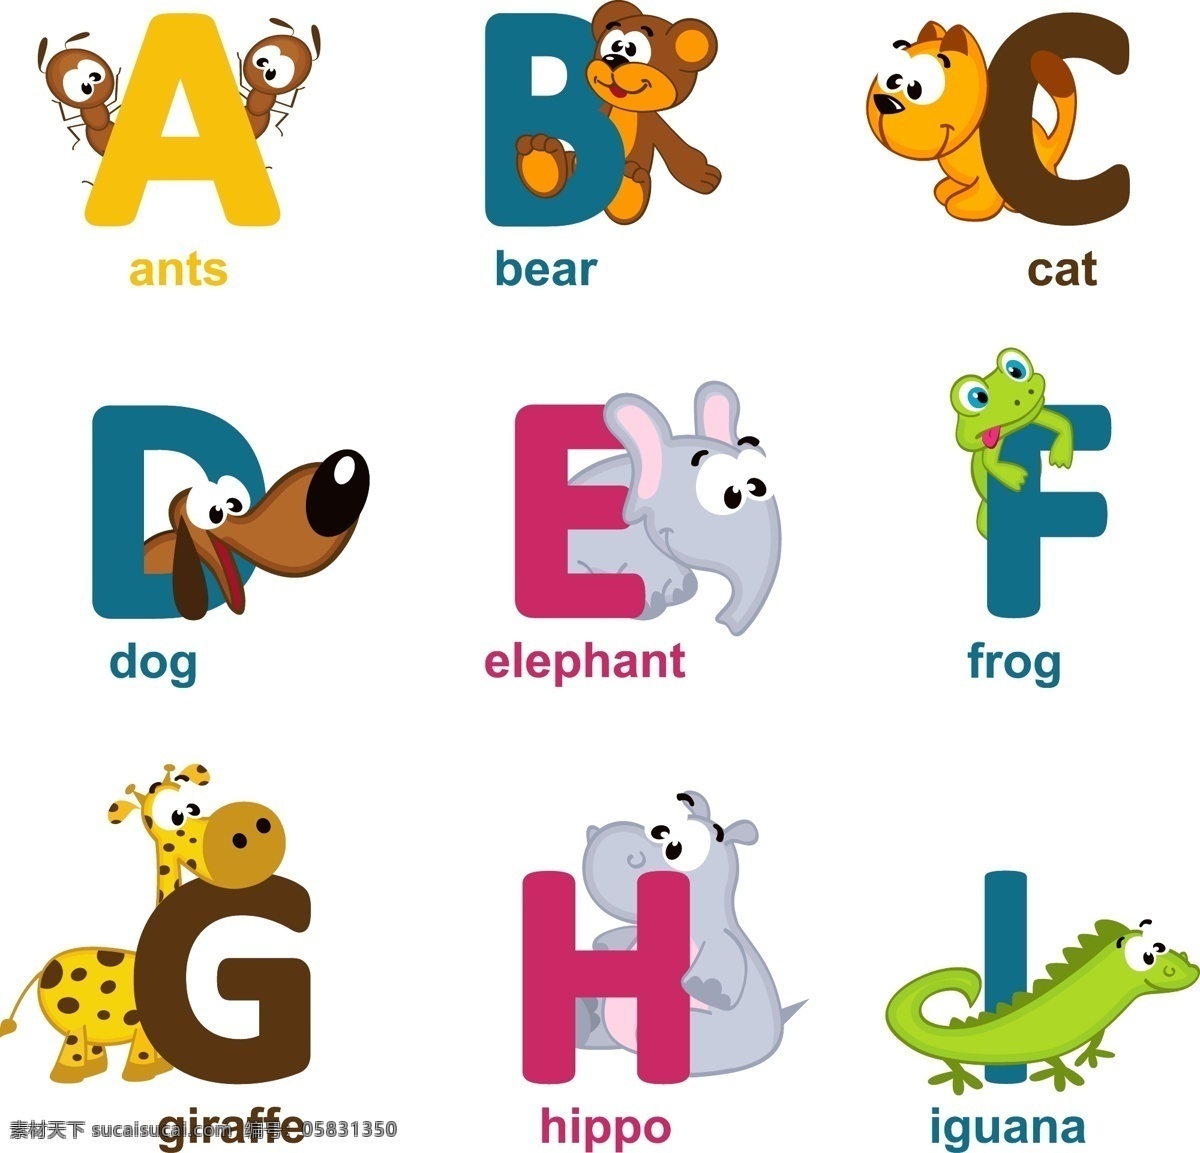 卡通字母 字母表 字母设计 英文字母 动物 手写 字母 英语字母表 英文 拼音 创意字母 时尚字母 时尚 手绘字母 装饰 字母主题 矢量